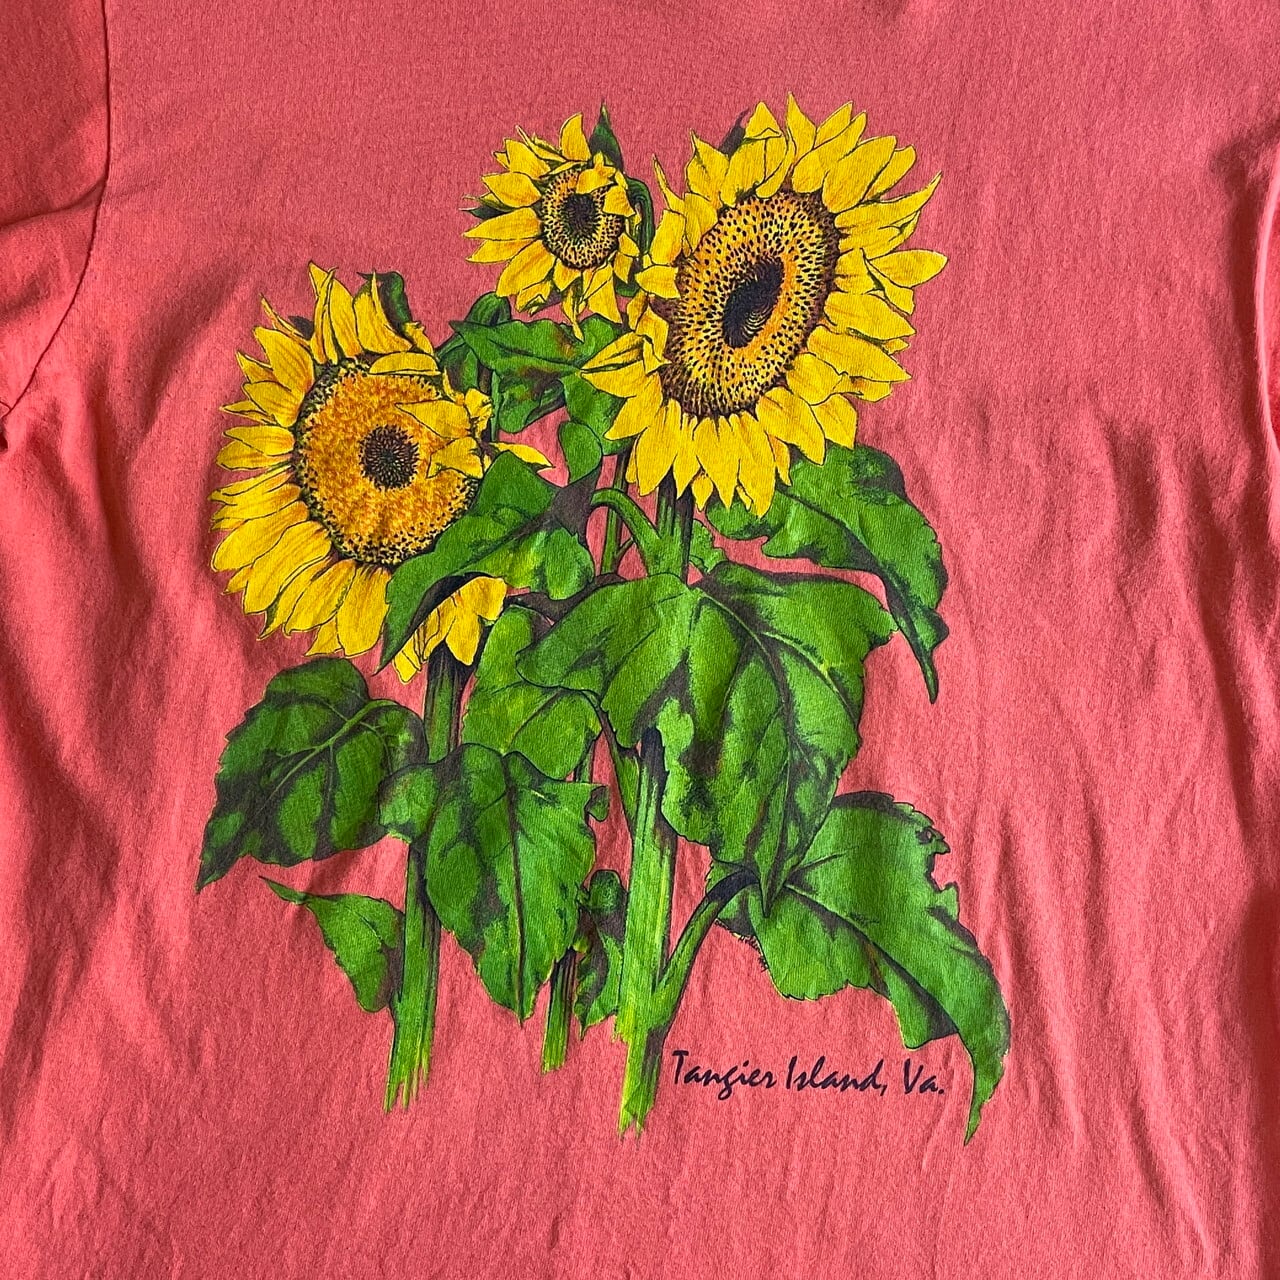 90s ビンテージ 花 フラワープリント 植物 アート Tシャツ 90年代